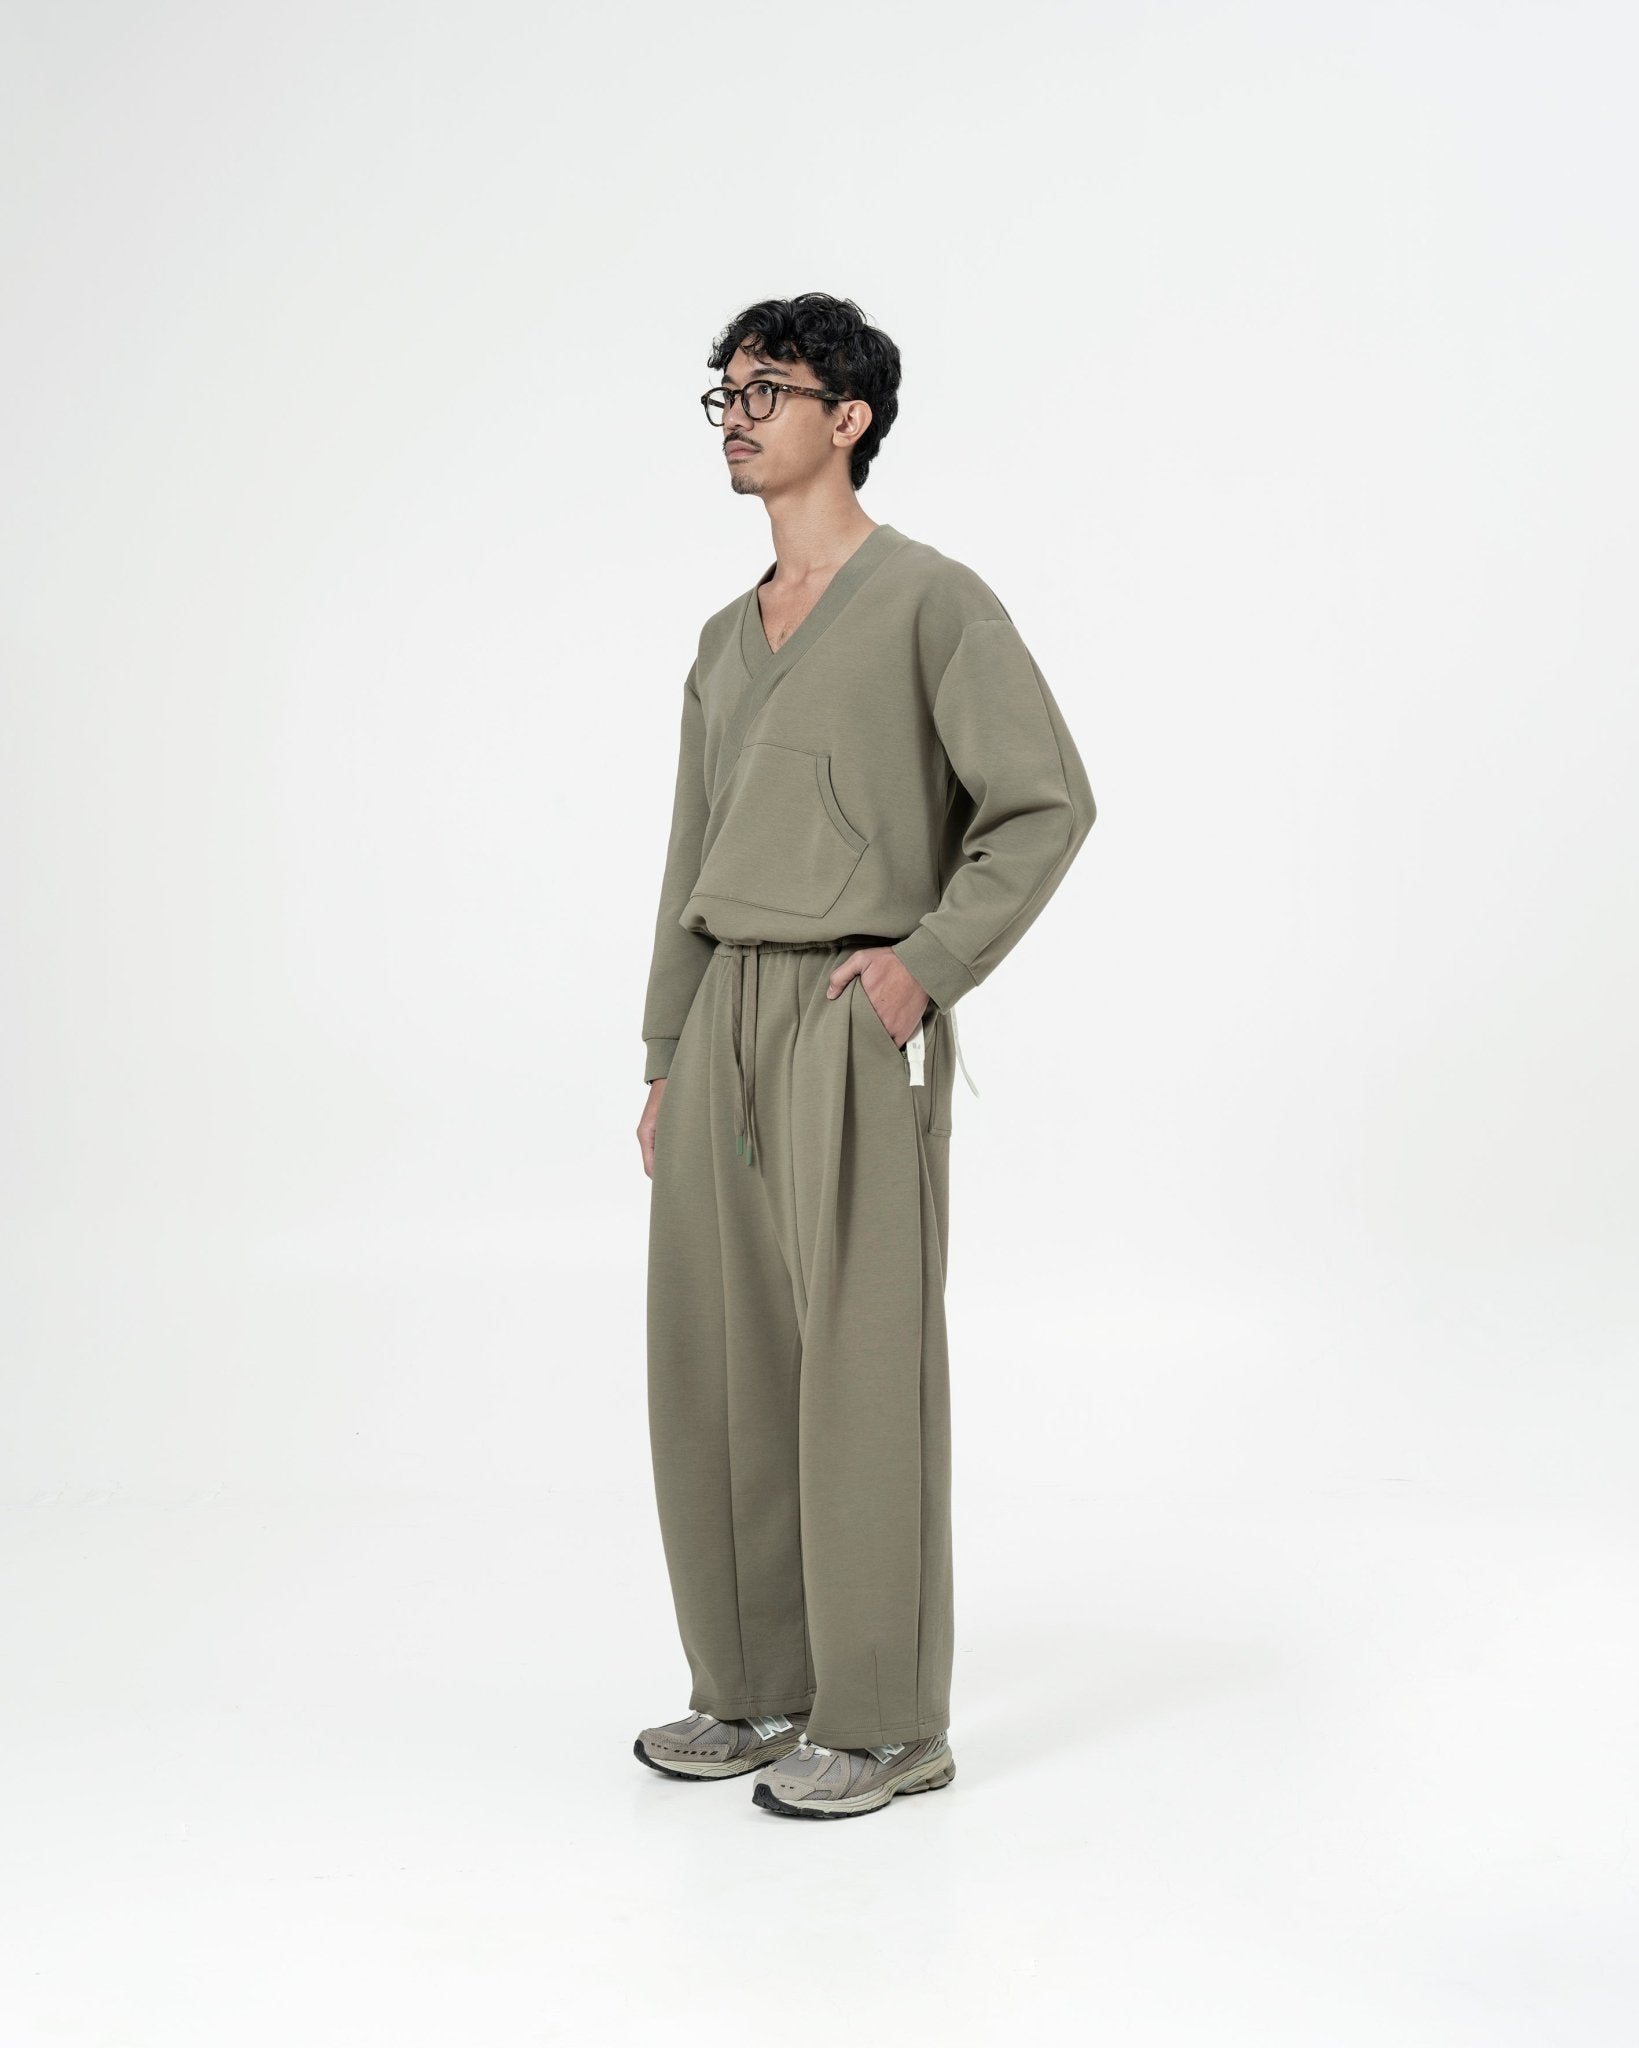 Kimono Sweater - Artichoke - G R A Y E